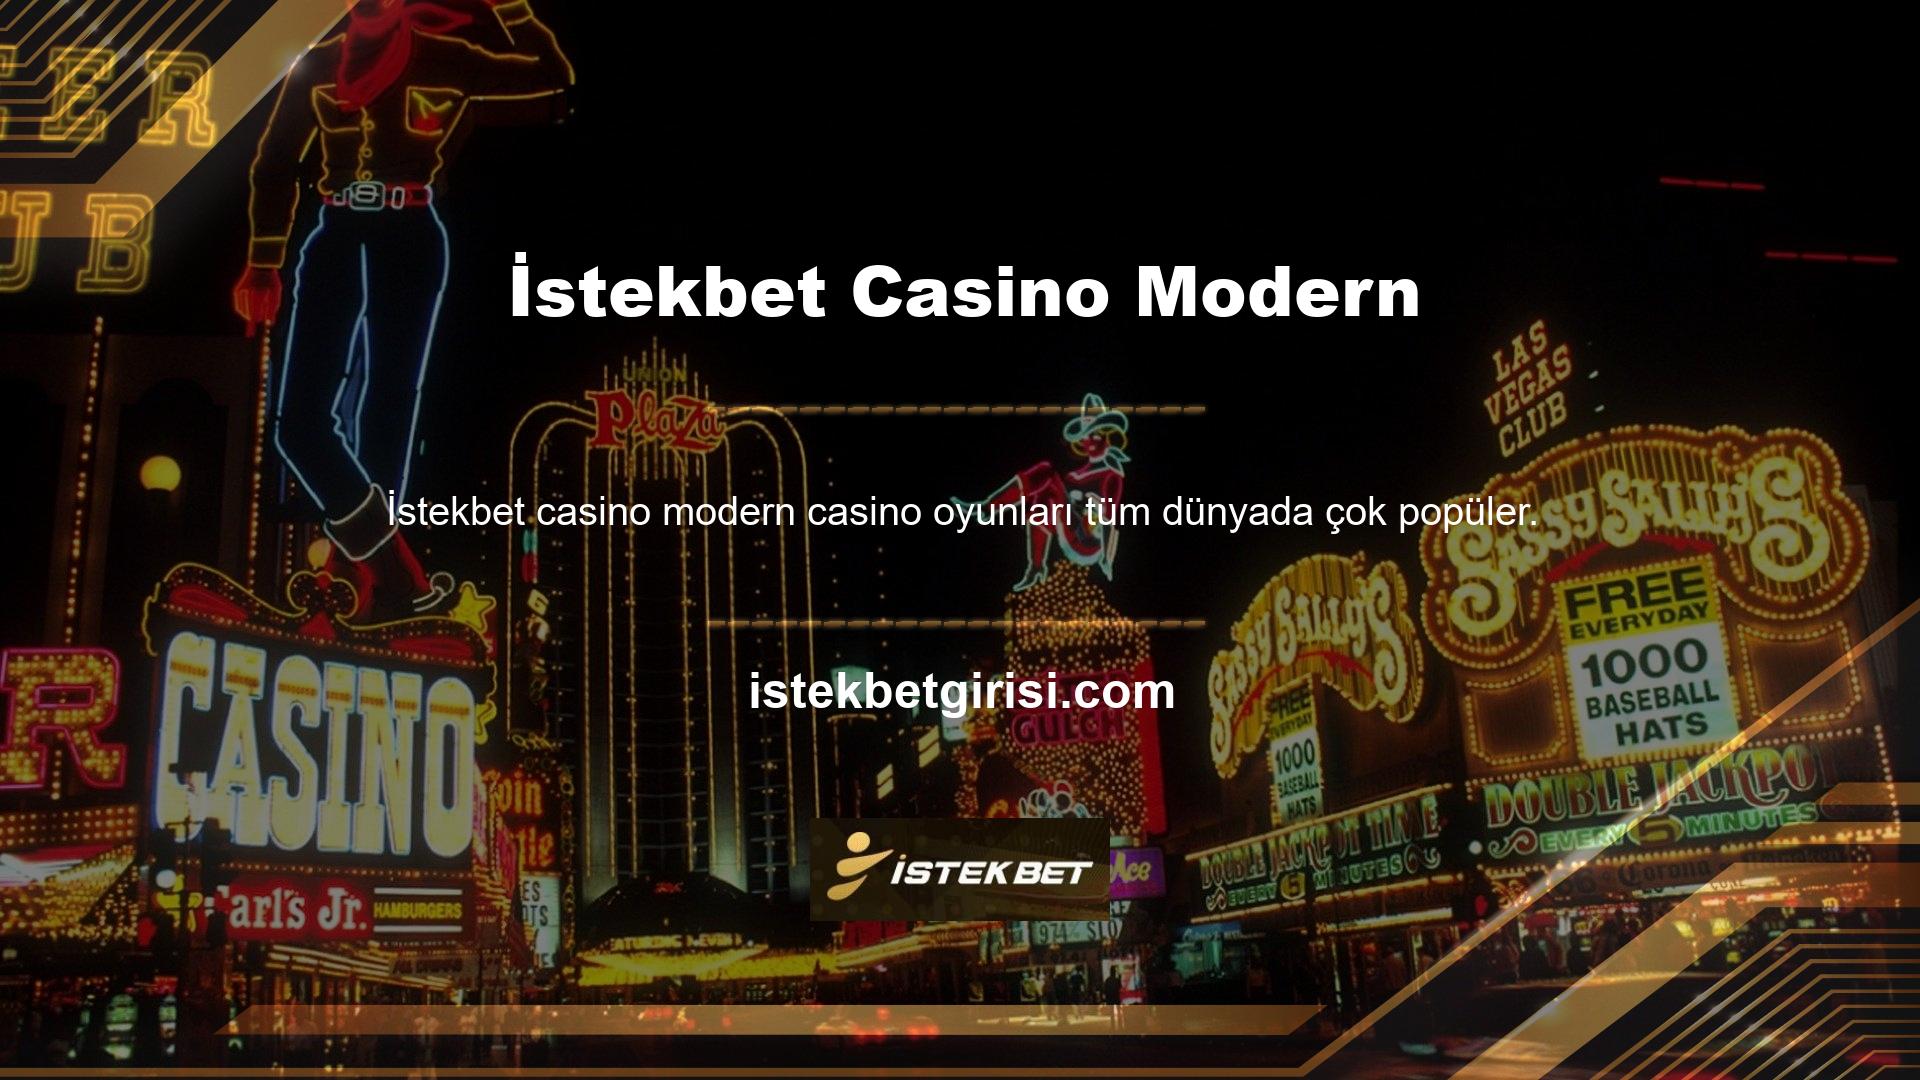 İstekbet Casino'nun modern üyelik kayıt sitesinde casino oyunları da mevcut olduğundan sıkılmadan dışarı çıkabilirsiniz